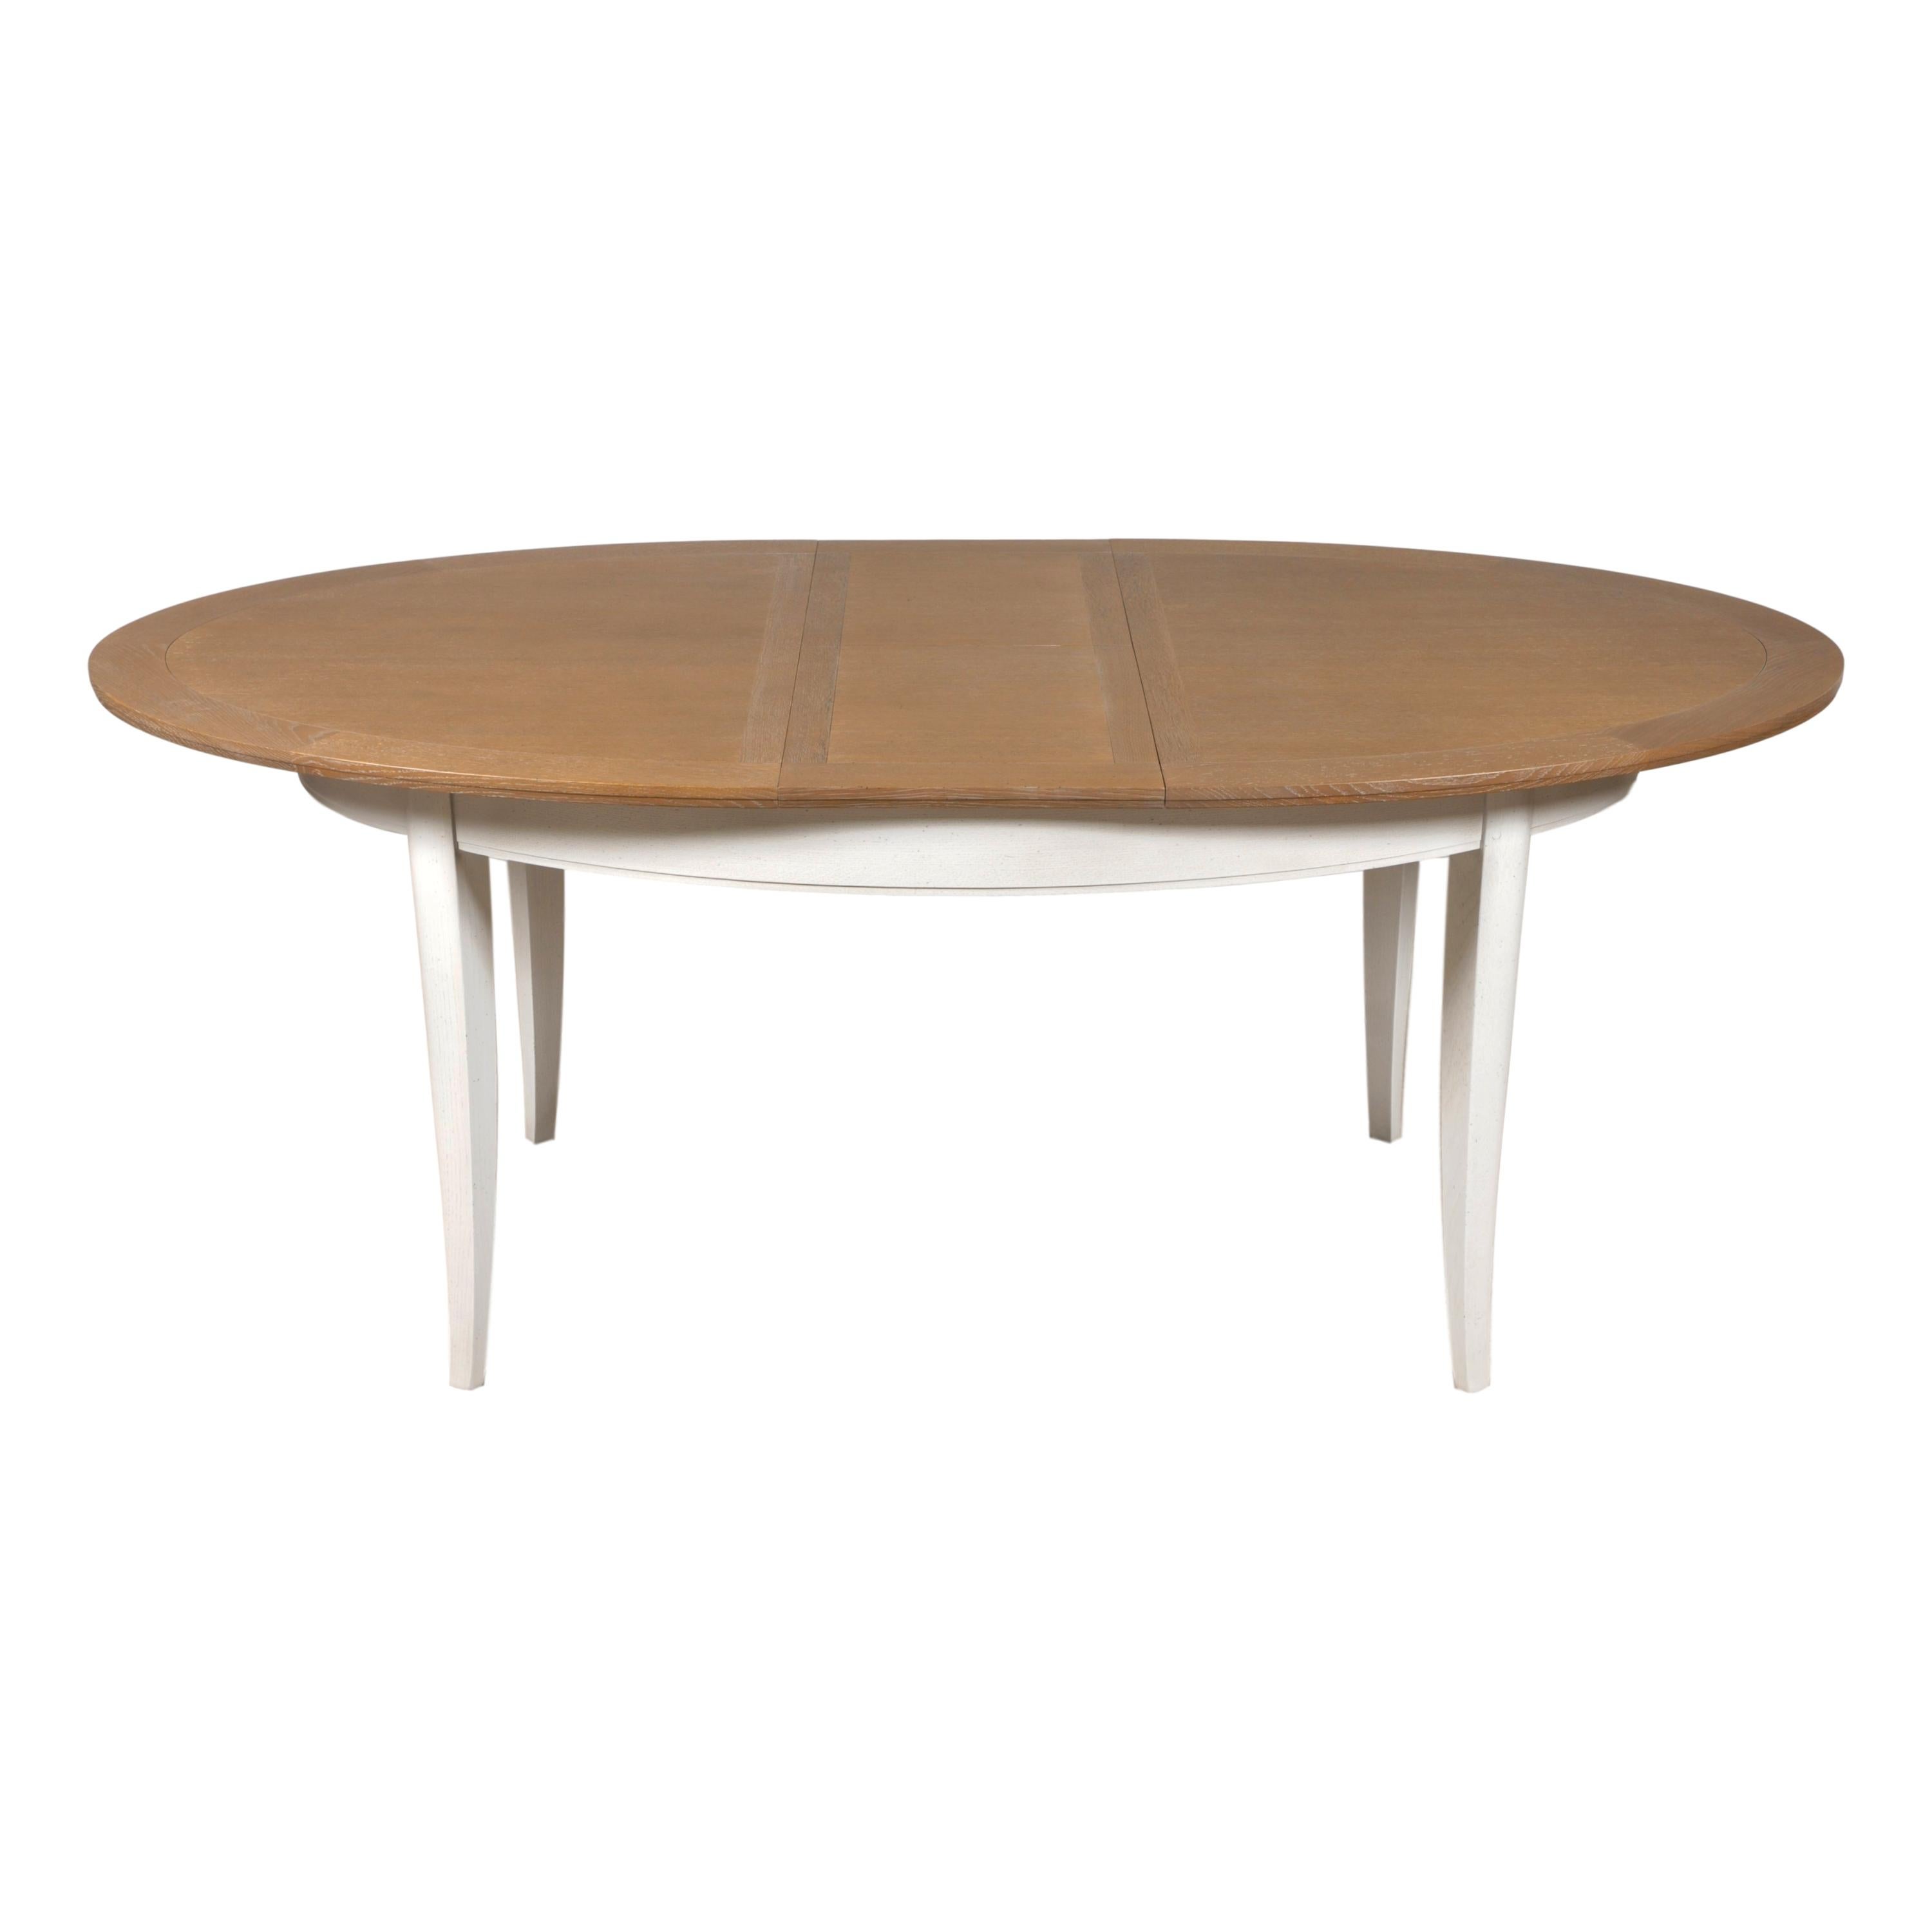 Das Design dieses ovalen Esstisches ist typisch für den aktuellen französischen provinziellen und klassischen Stil.

In diesem Tisch sind 2 gefaltete Verlängerungen von 40 cm / 16